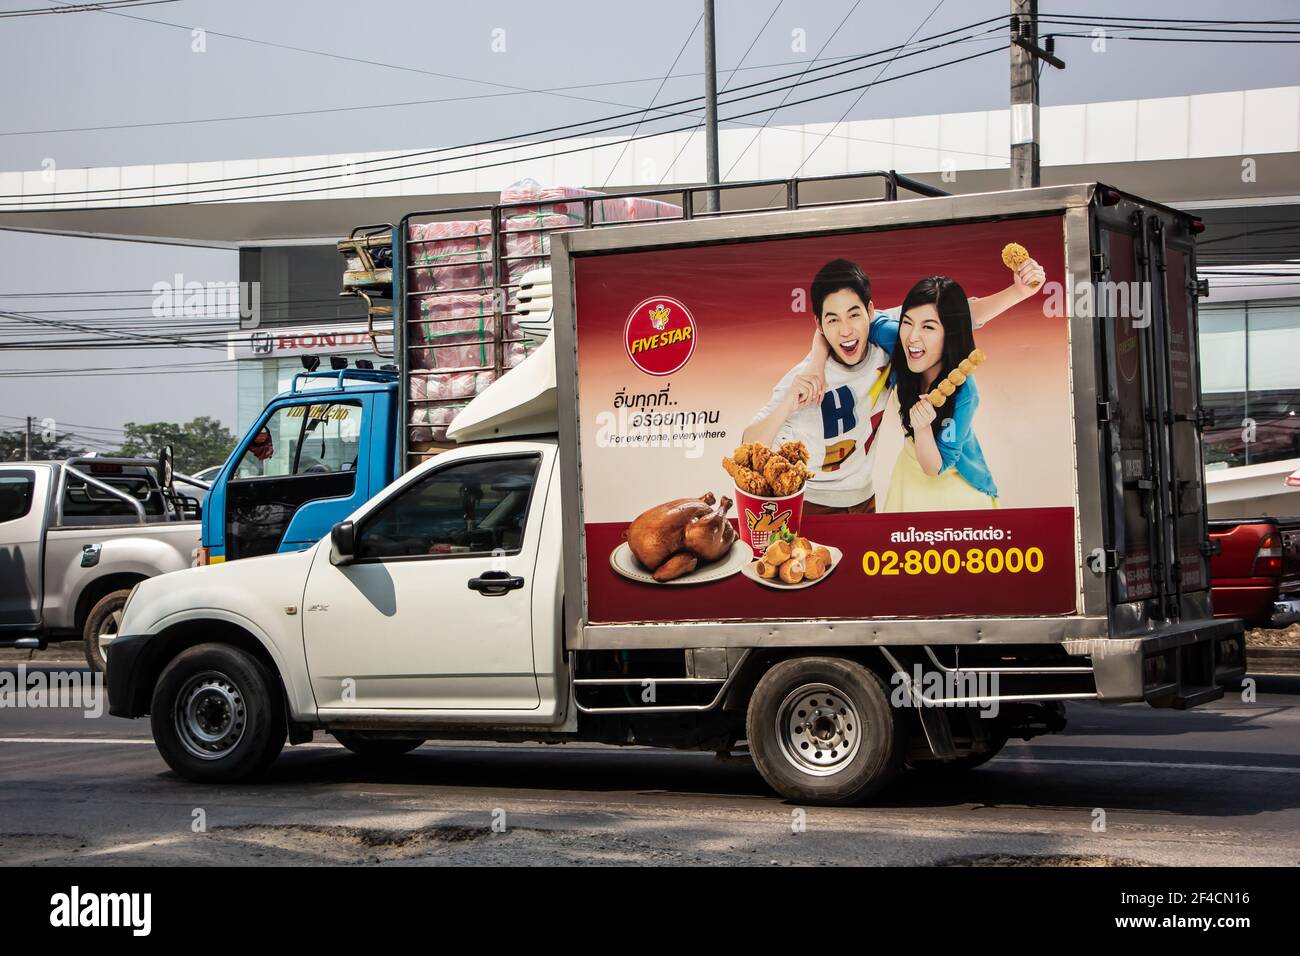 Chiangmai, Thaïlande - 2 mars 2021 : camion conteneur de la compagnie ALIMENTAIRE FIVE STAR. Photo sur la route n°121 à environ 8 km du centre-ville de Chiangmai en thaïlande. Banque D'Images